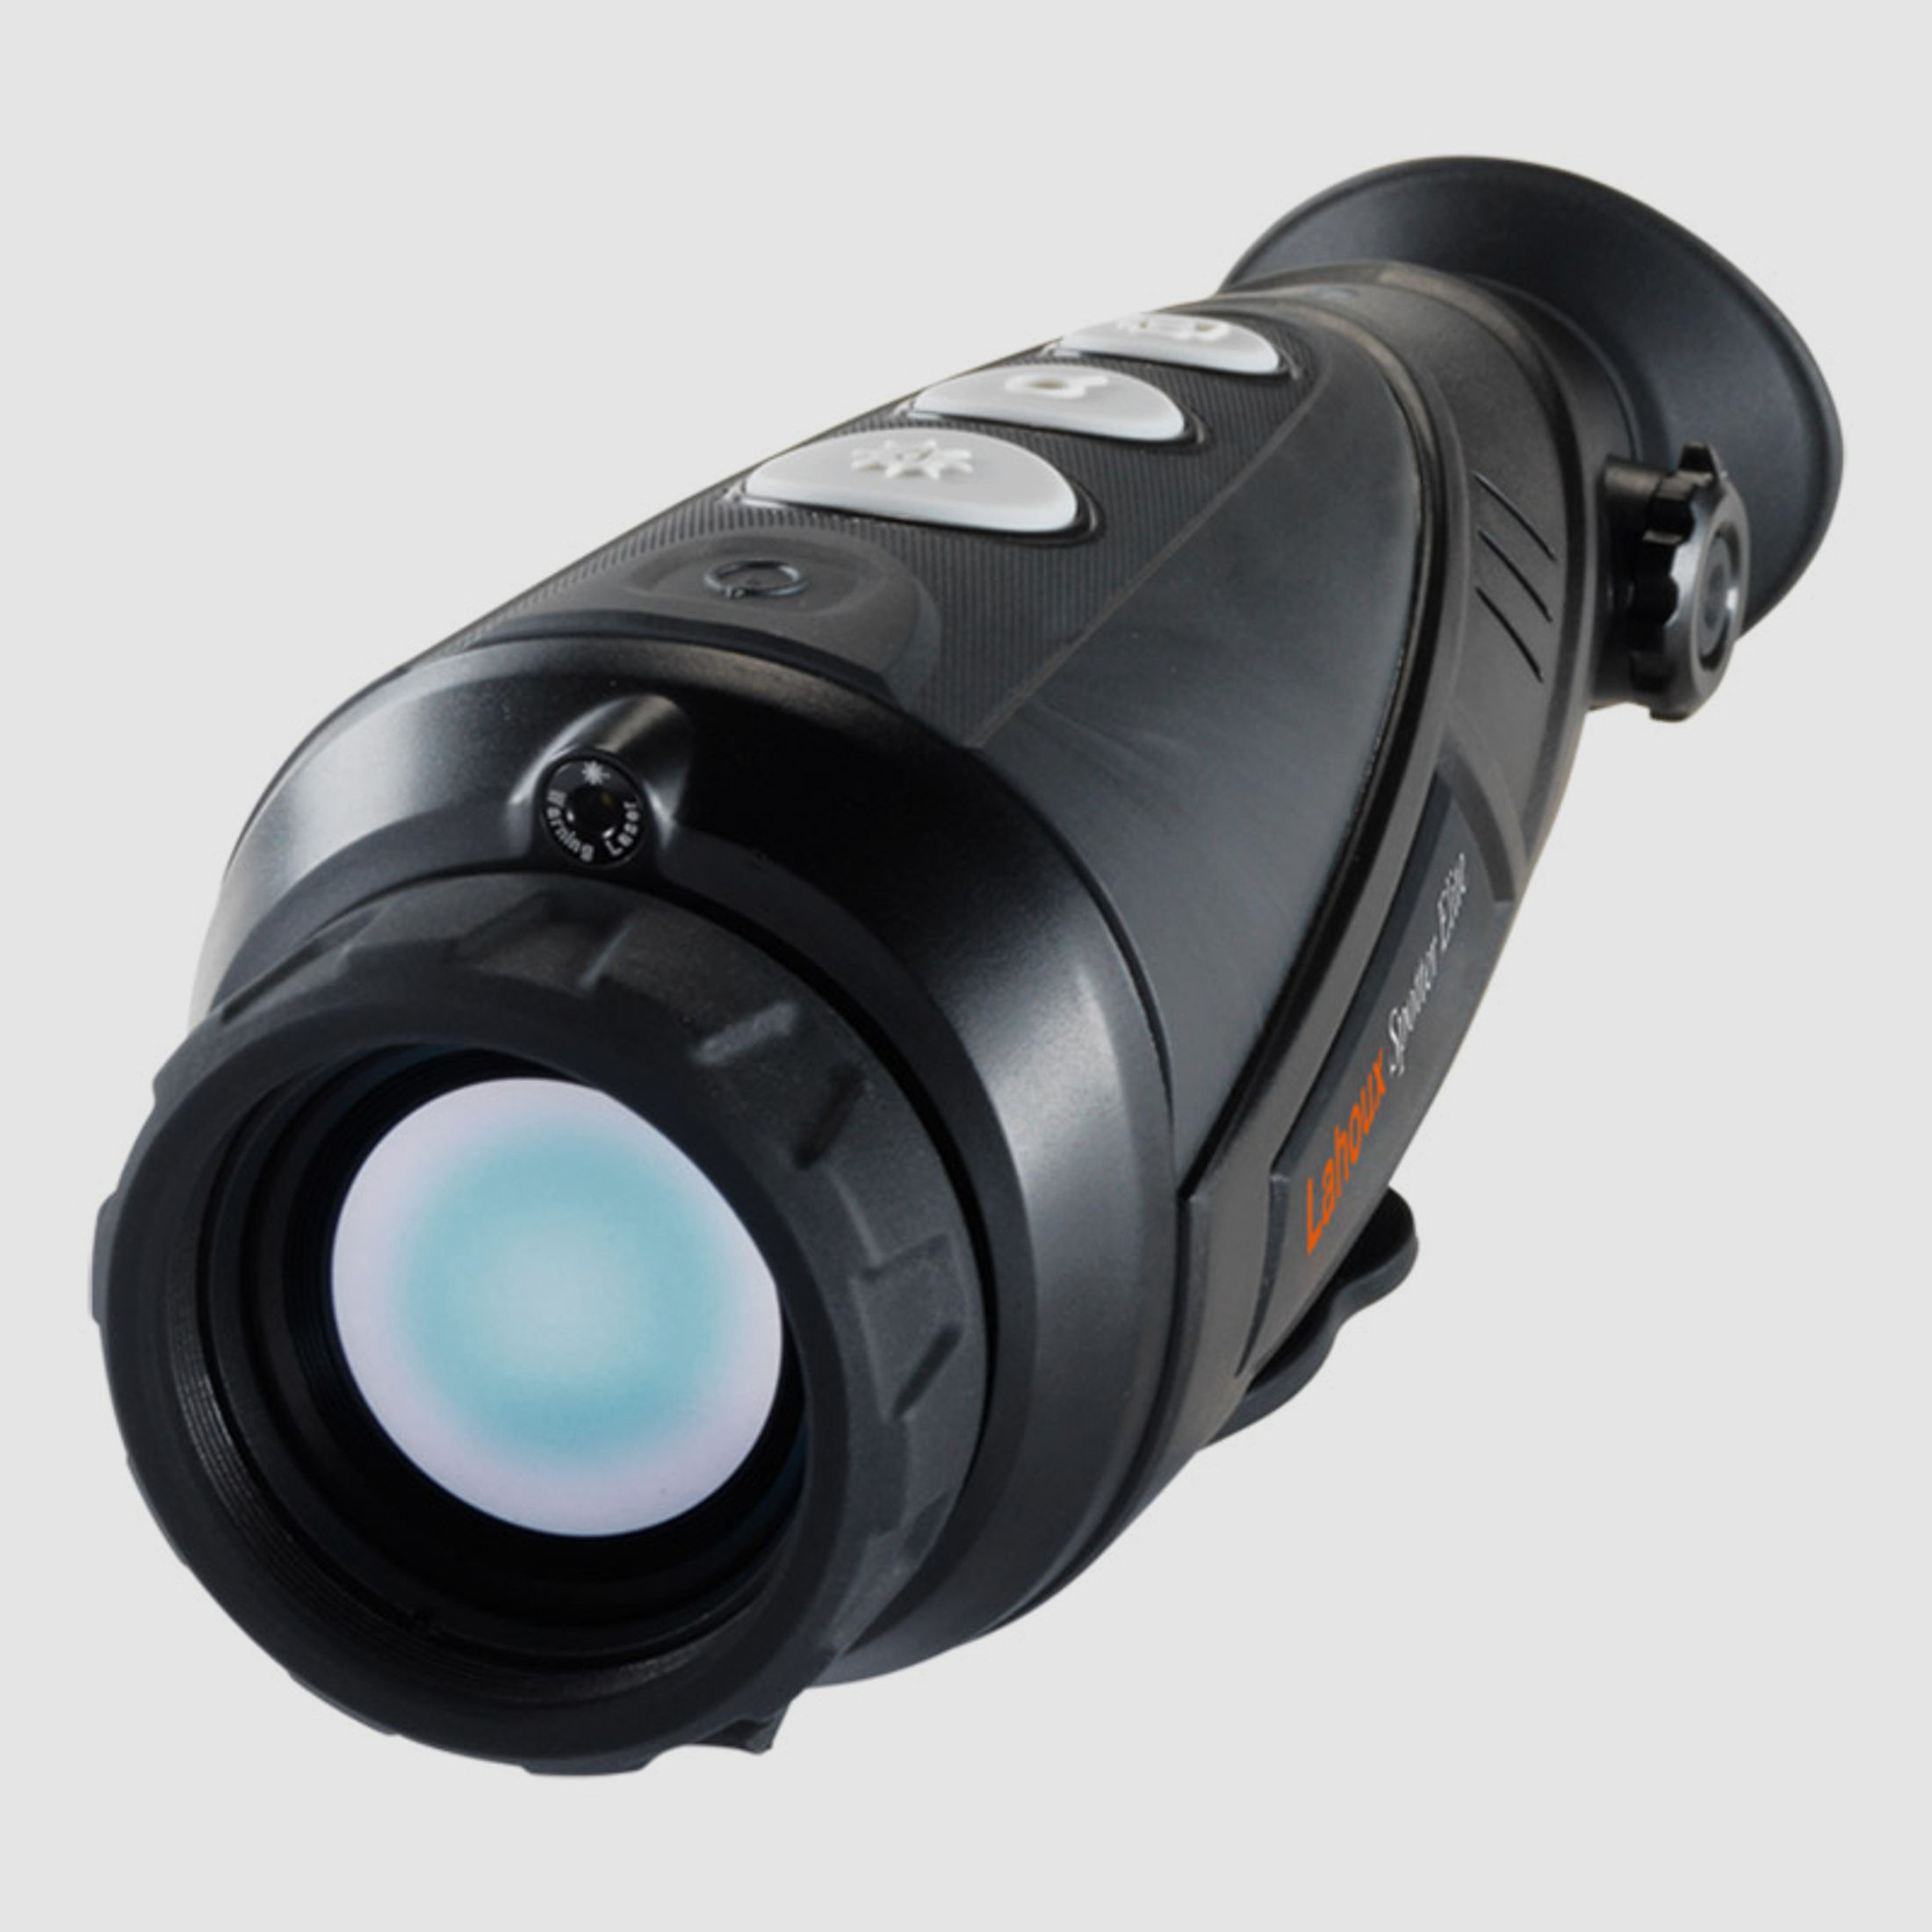 Lahoux Spotter Elite 35V Wärmebildkamera